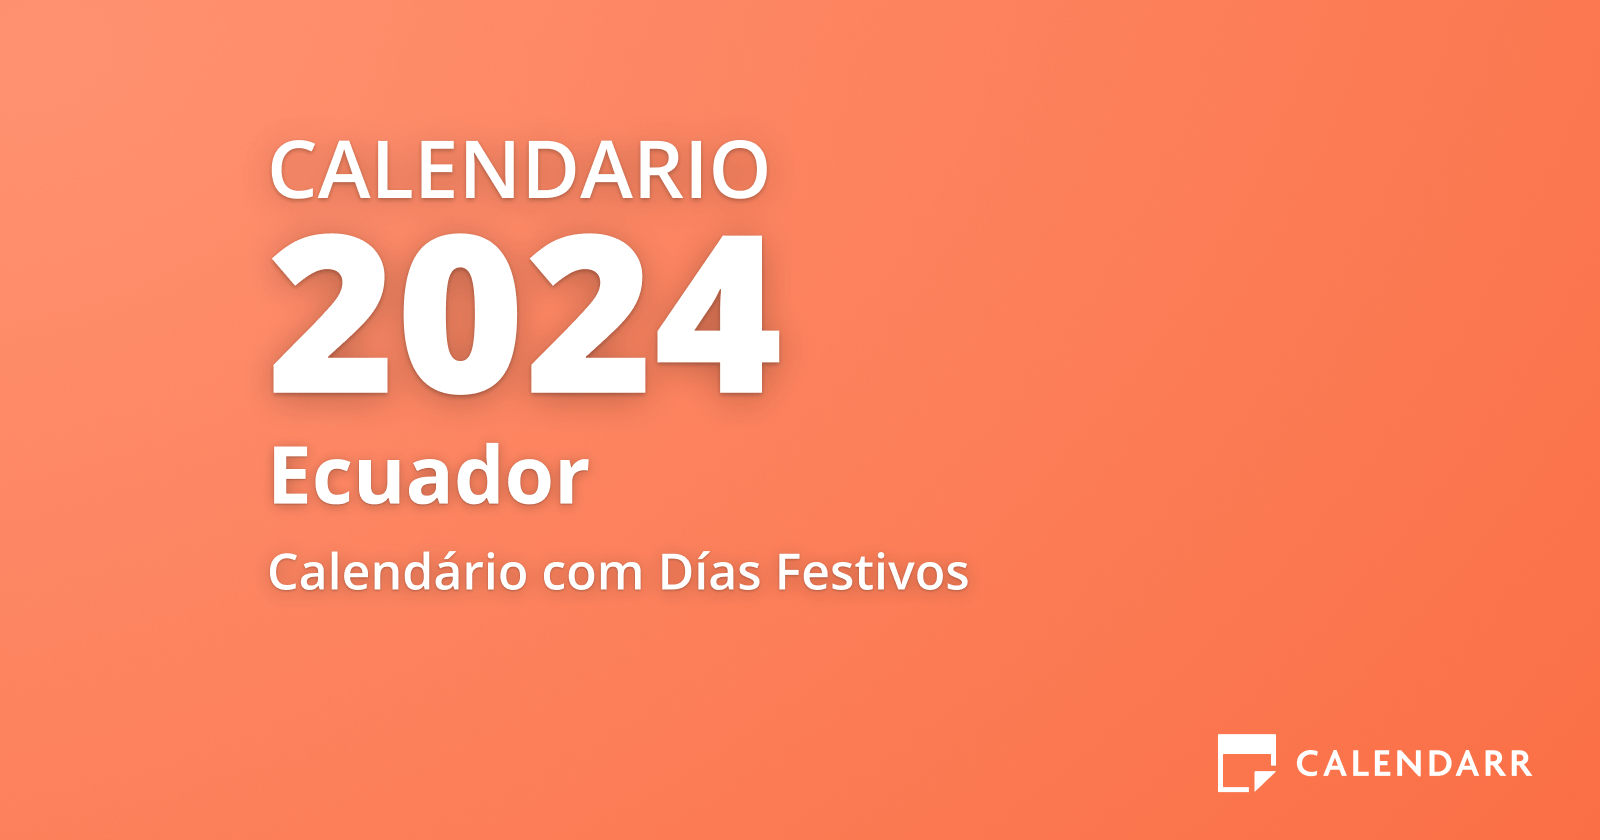 Calendario Enero 2024 de Ecuador (Días Festivos y Fechas Importantes